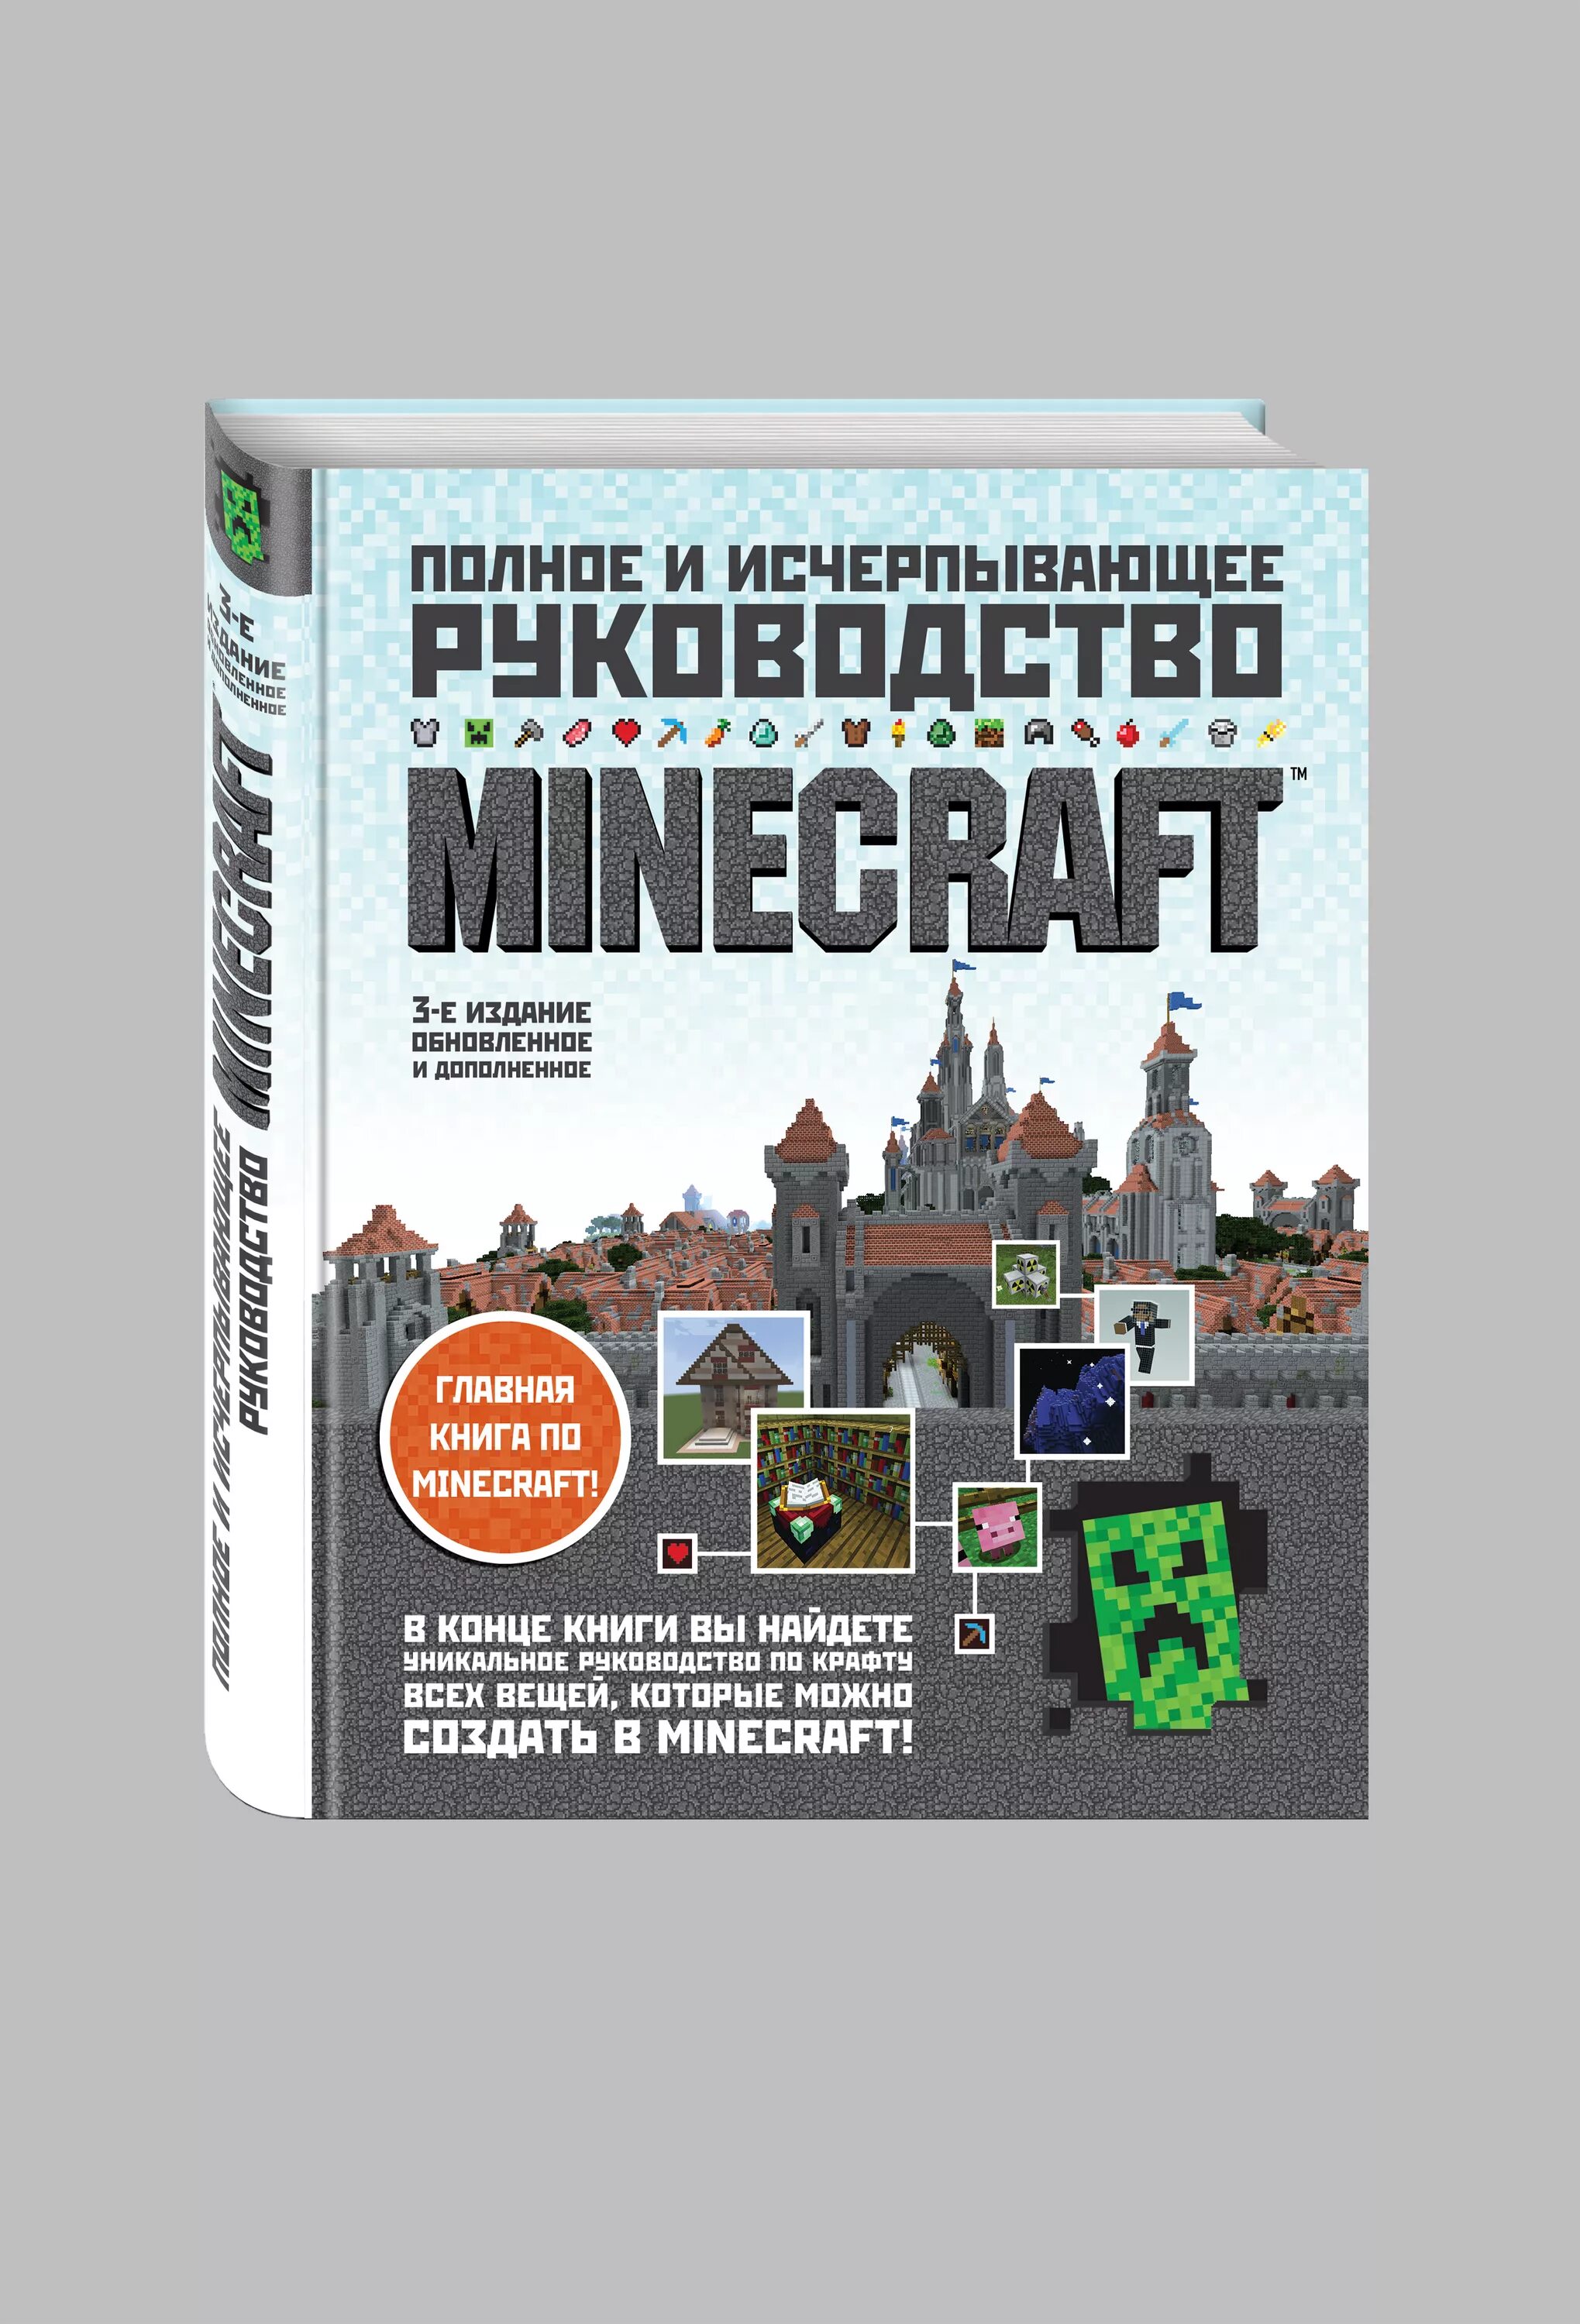 Суть книги майнкрафт. Minecraft книга руководство. Полное и исчерпывающее руководство Minecraft 1 издание. Полное руководство по майнкрафту. Все книги по майнкрафту.